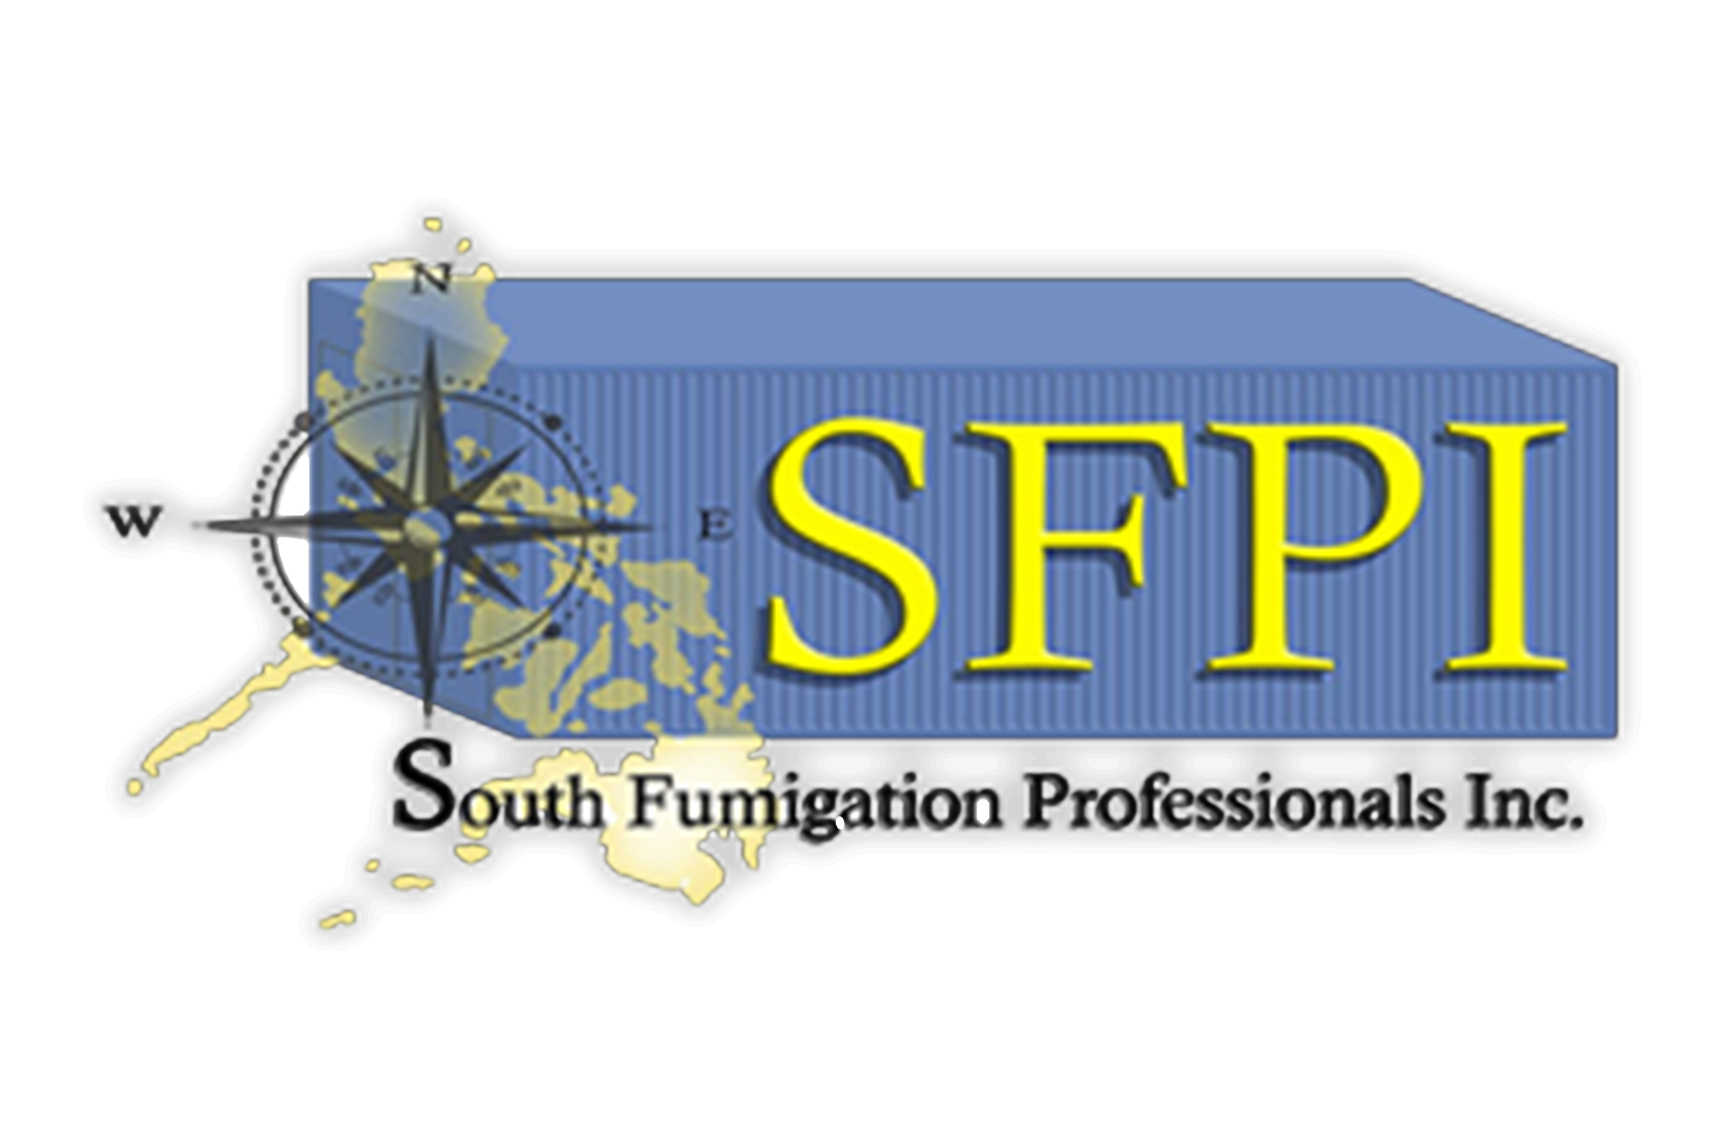 South Fumigation Professionals Inc.